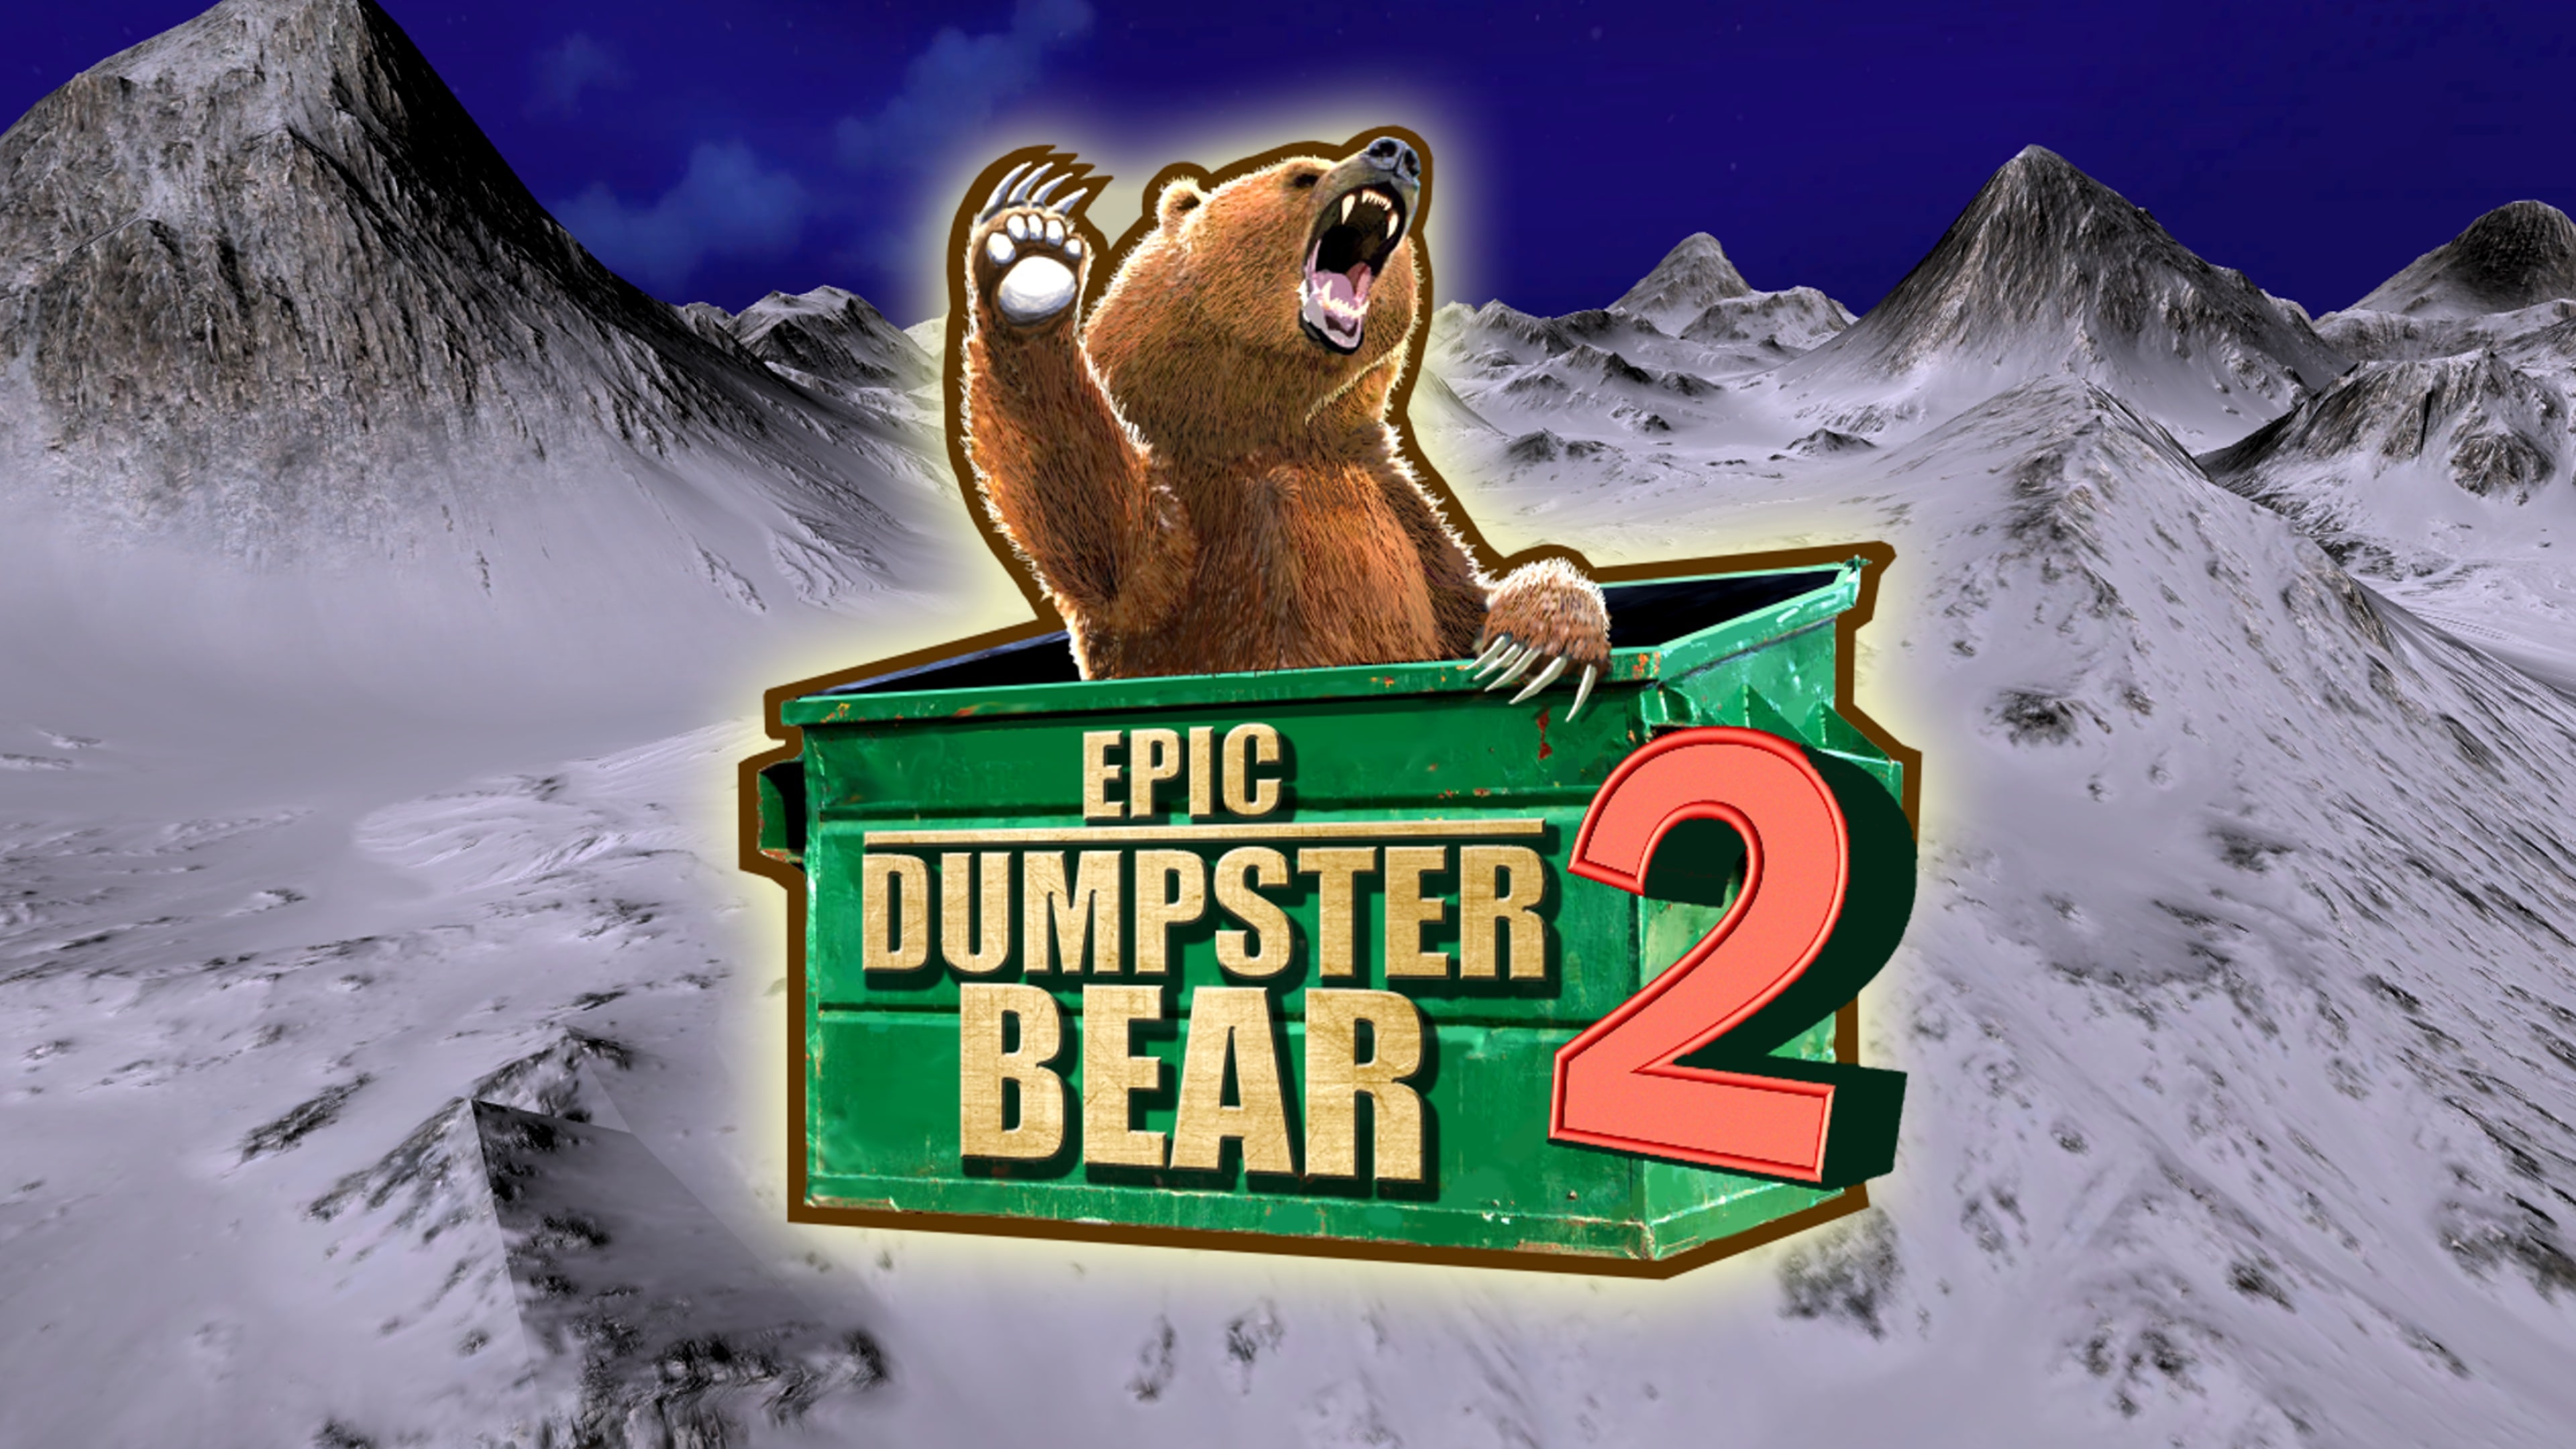 Epic Dumpster Bear 2